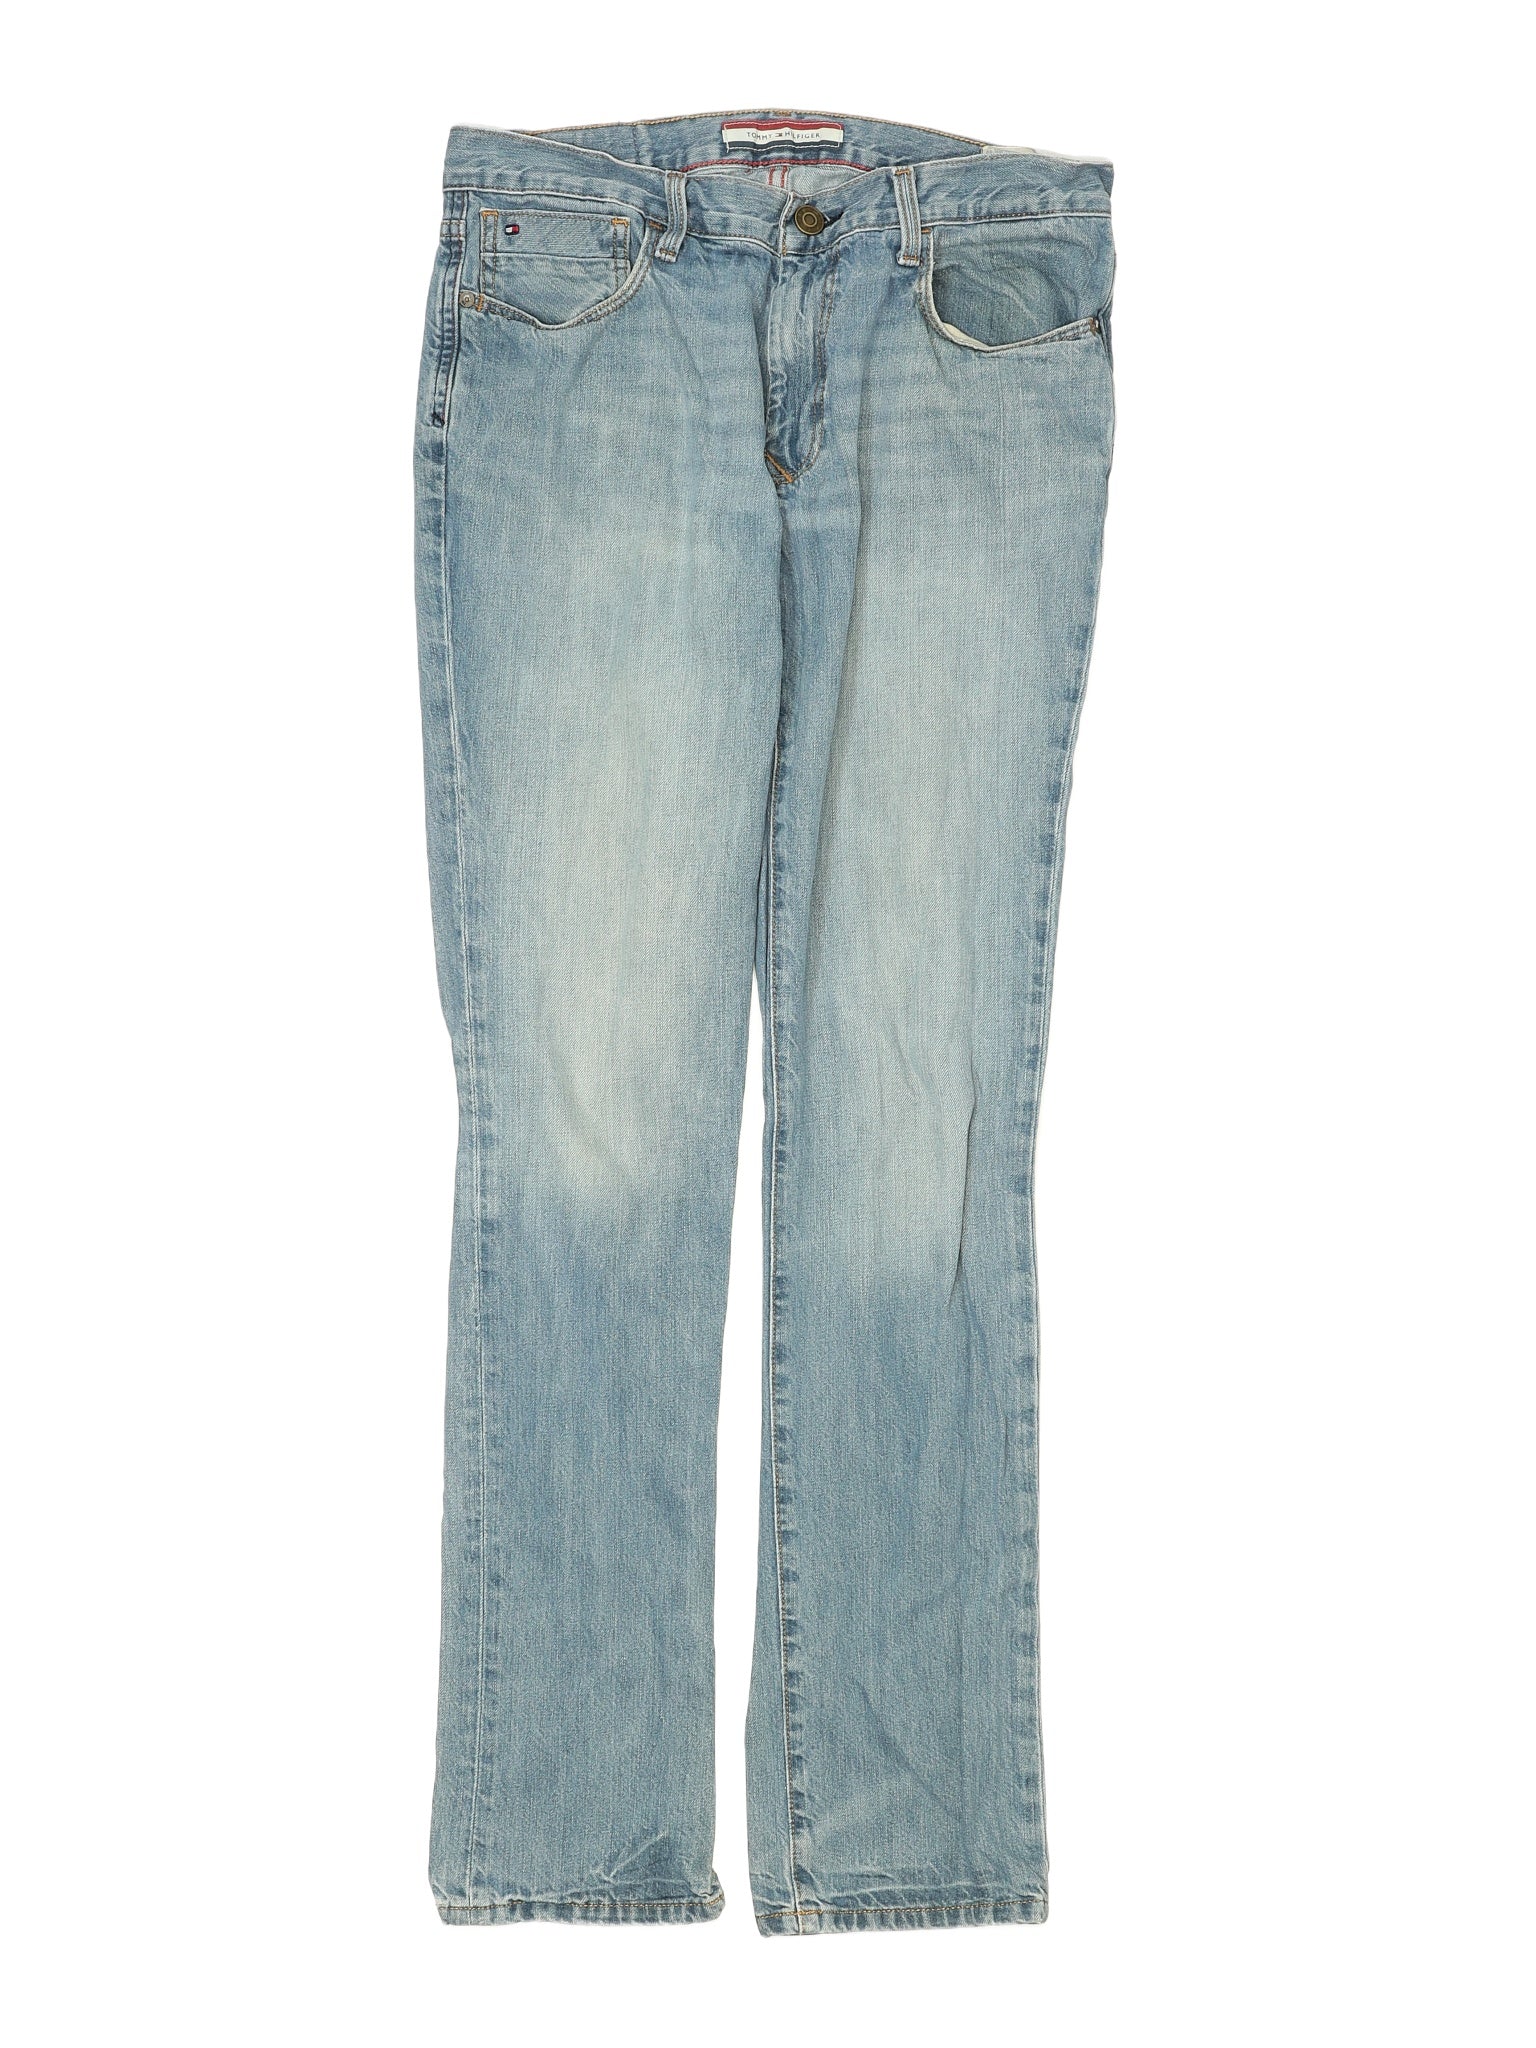 Jeans size - 33 (W33 L34)